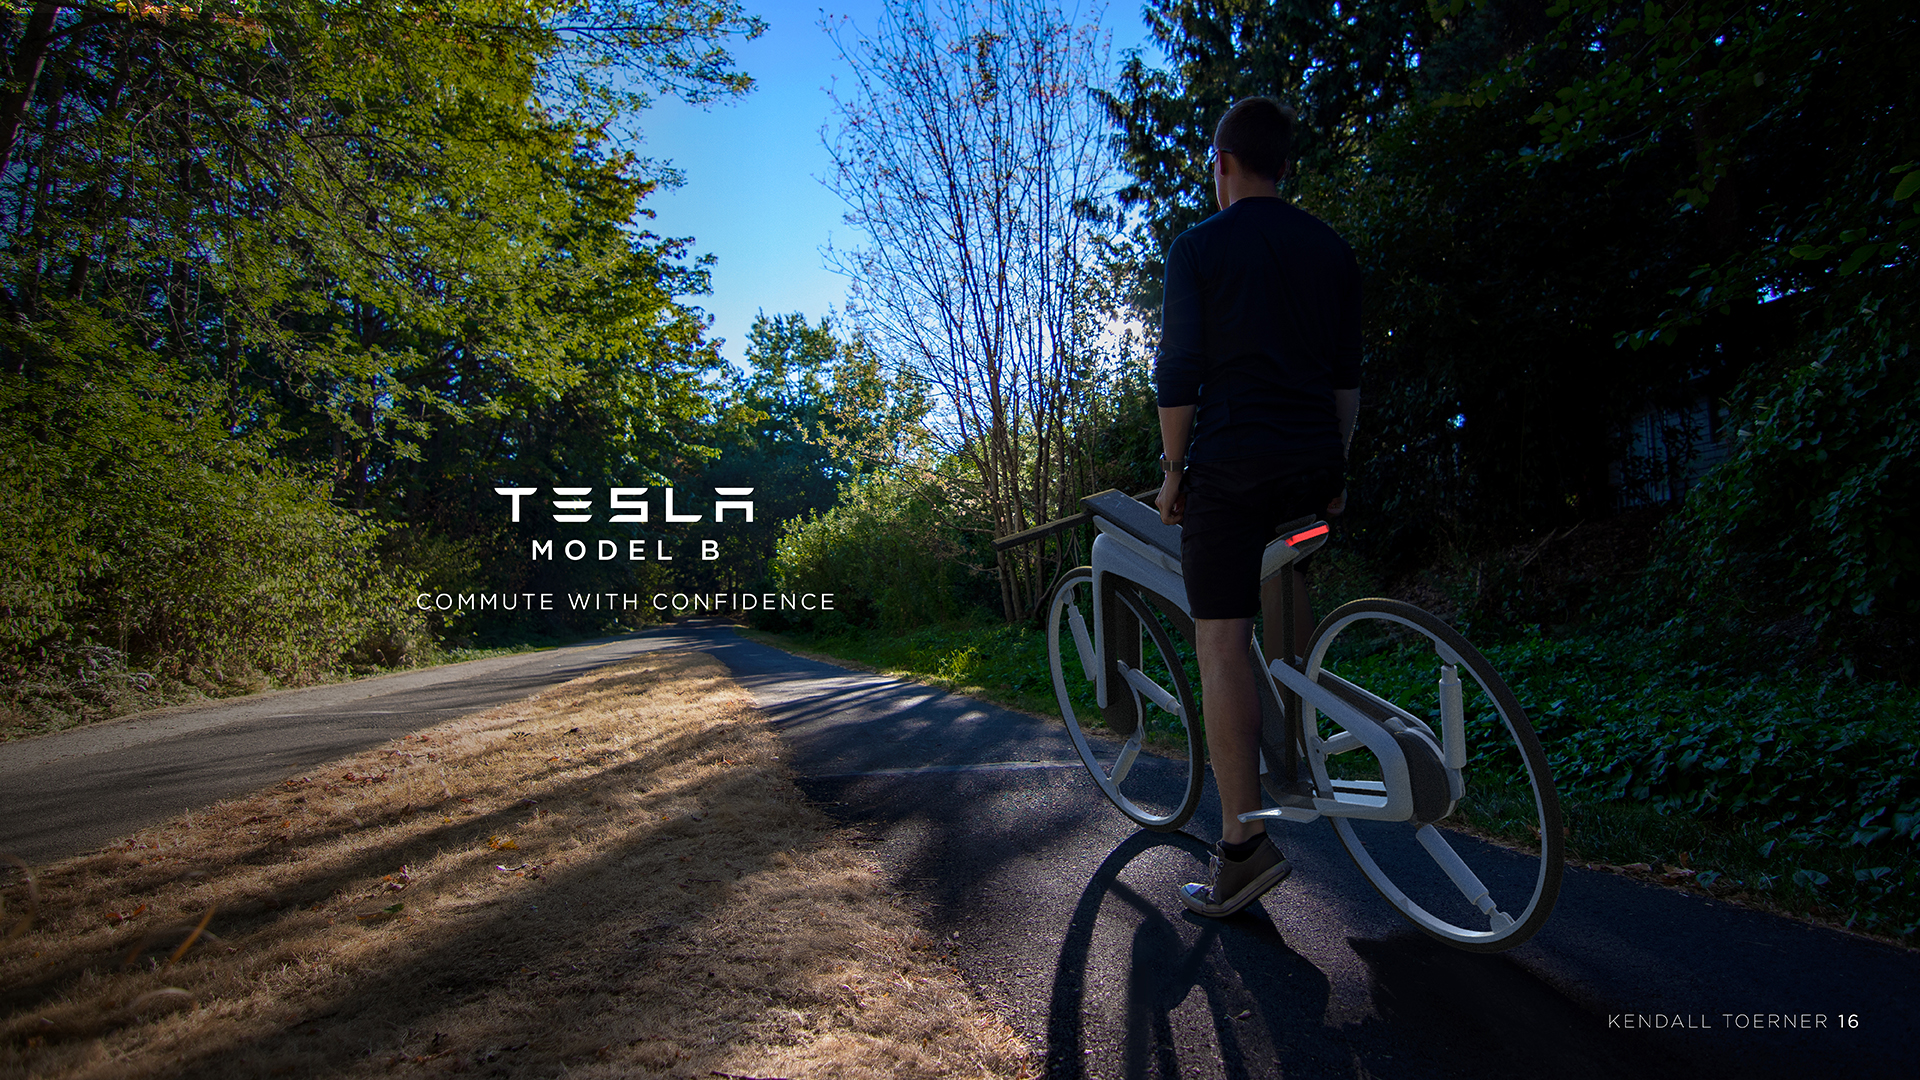 دوچرخه برقی تسلا ترکیبی از فناوری های خودرو و دوچرخه